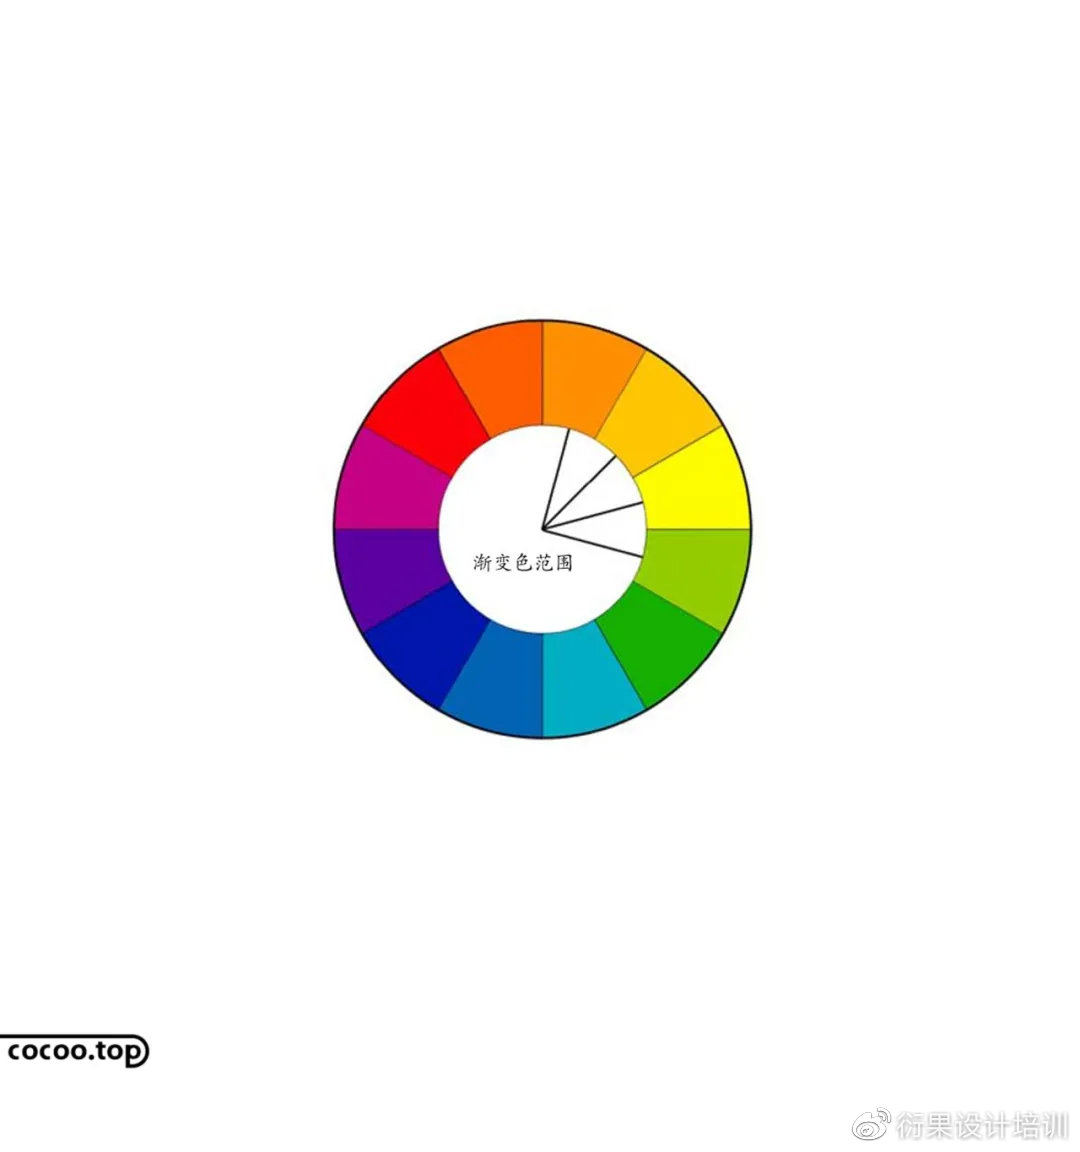 【设计干货】如何能够掌握色彩搭配的使用技巧